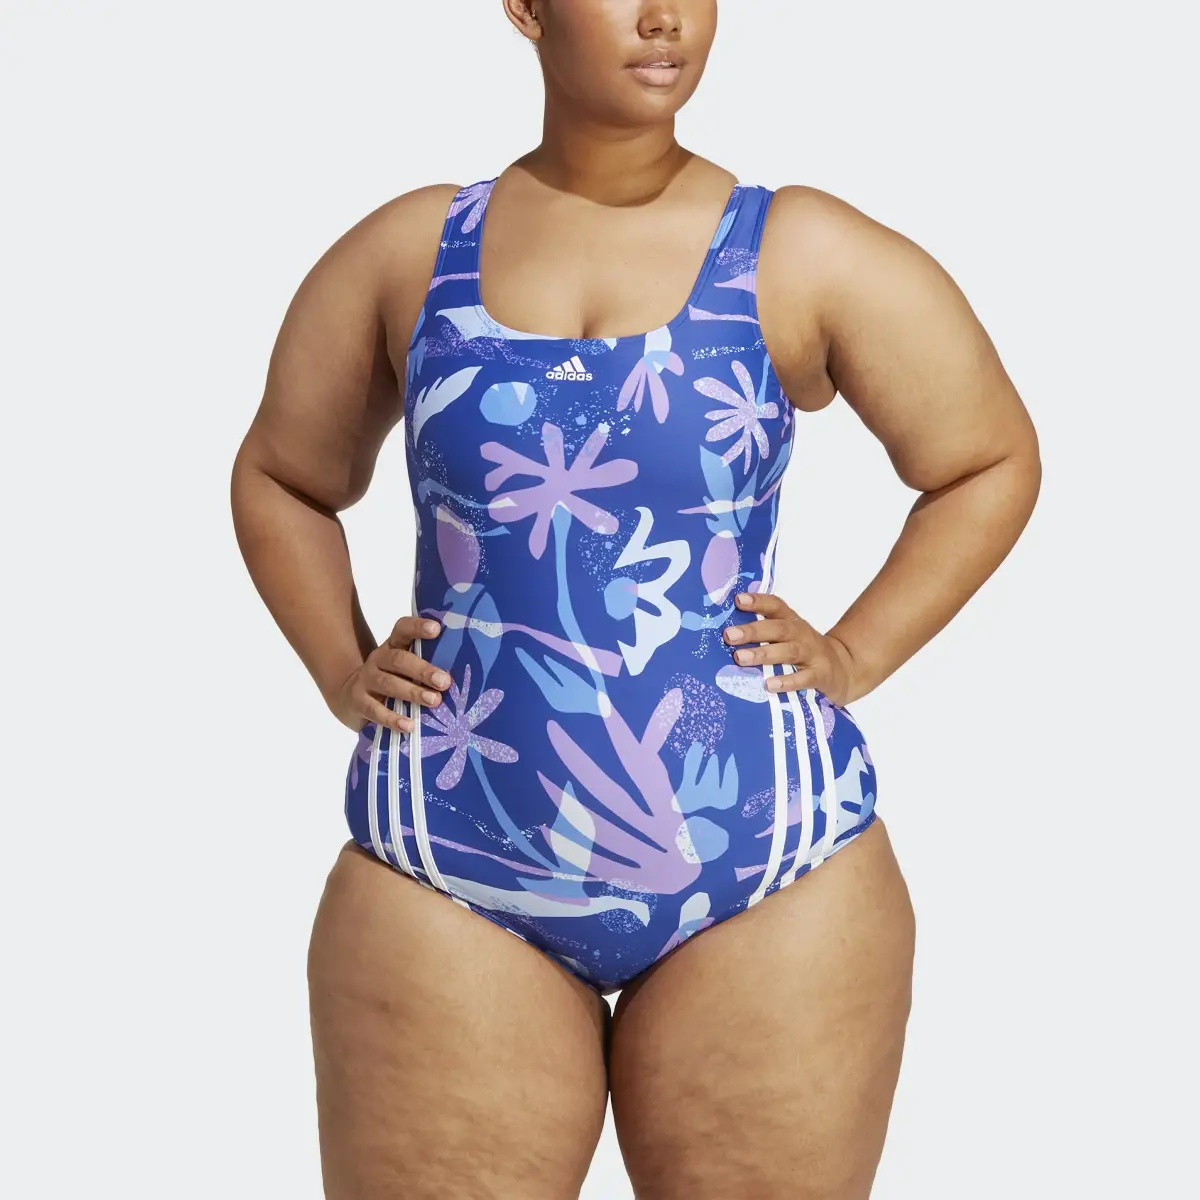 Adidas Floral 3-Stripes Swimsuit (Plus Size). 1